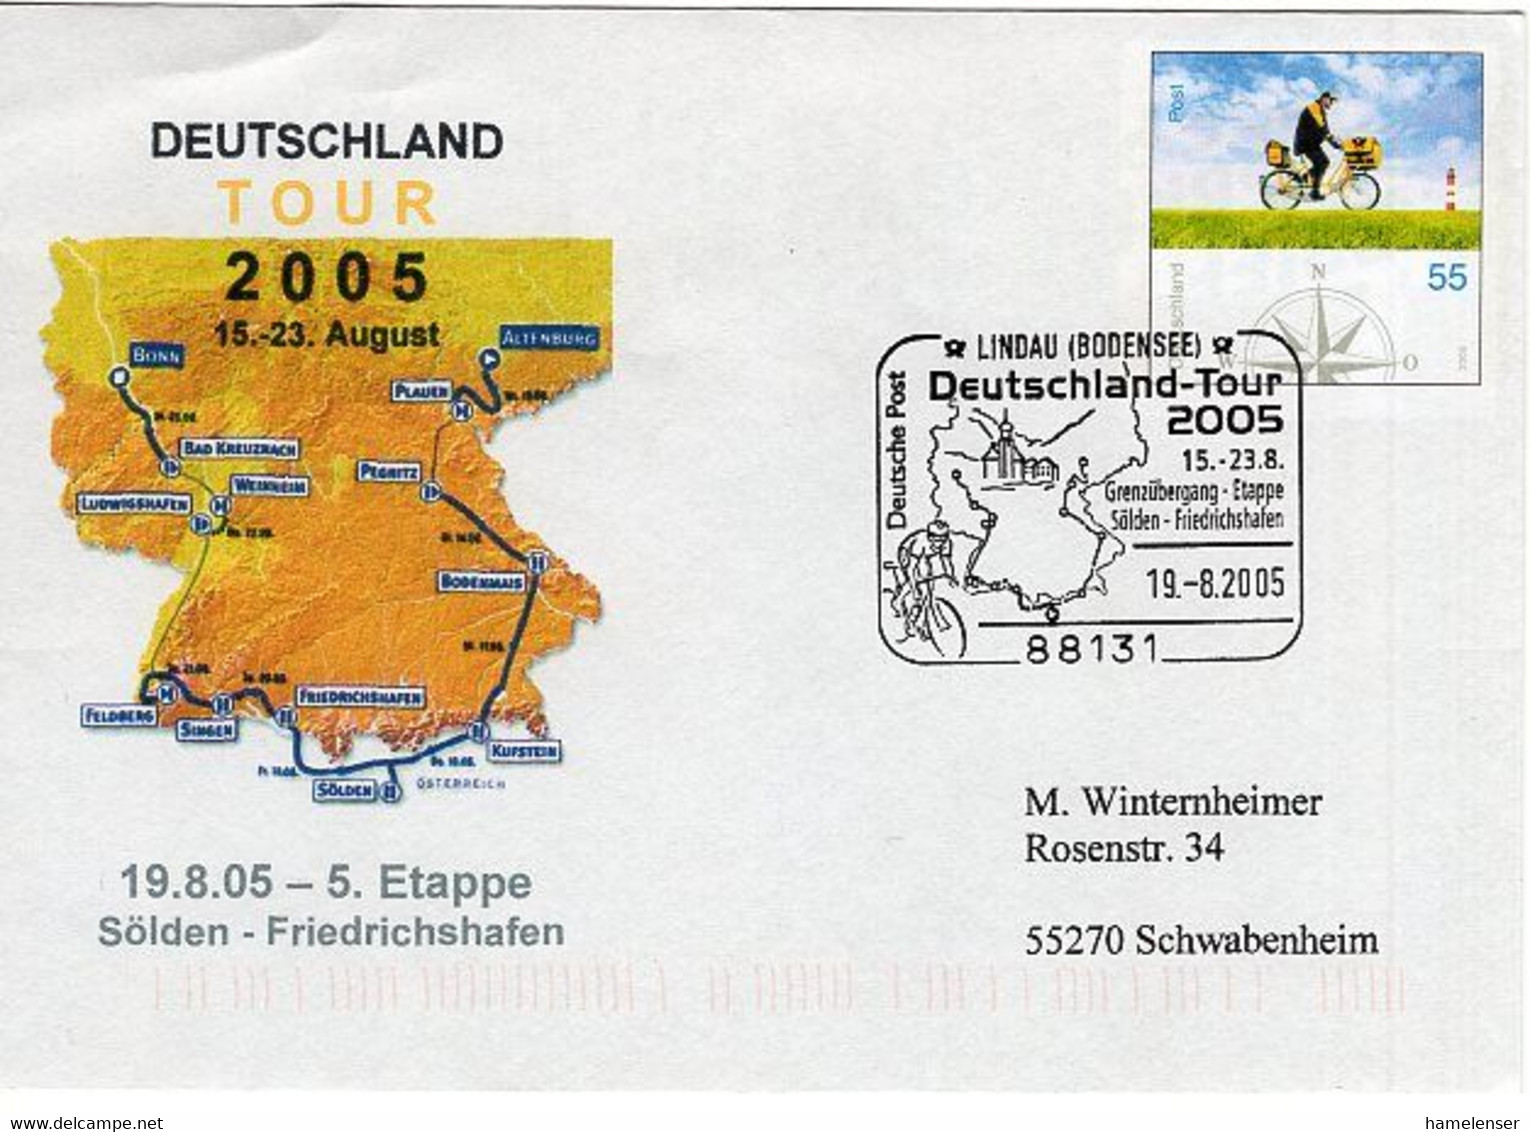 50550 - Bund - 2005 - 55c. Plusbrief "Brieftraeger" SoStpl. LINDAU - DEUTSCHLAND-TOUR 2005 -> Schwabenheim - Wielrennen